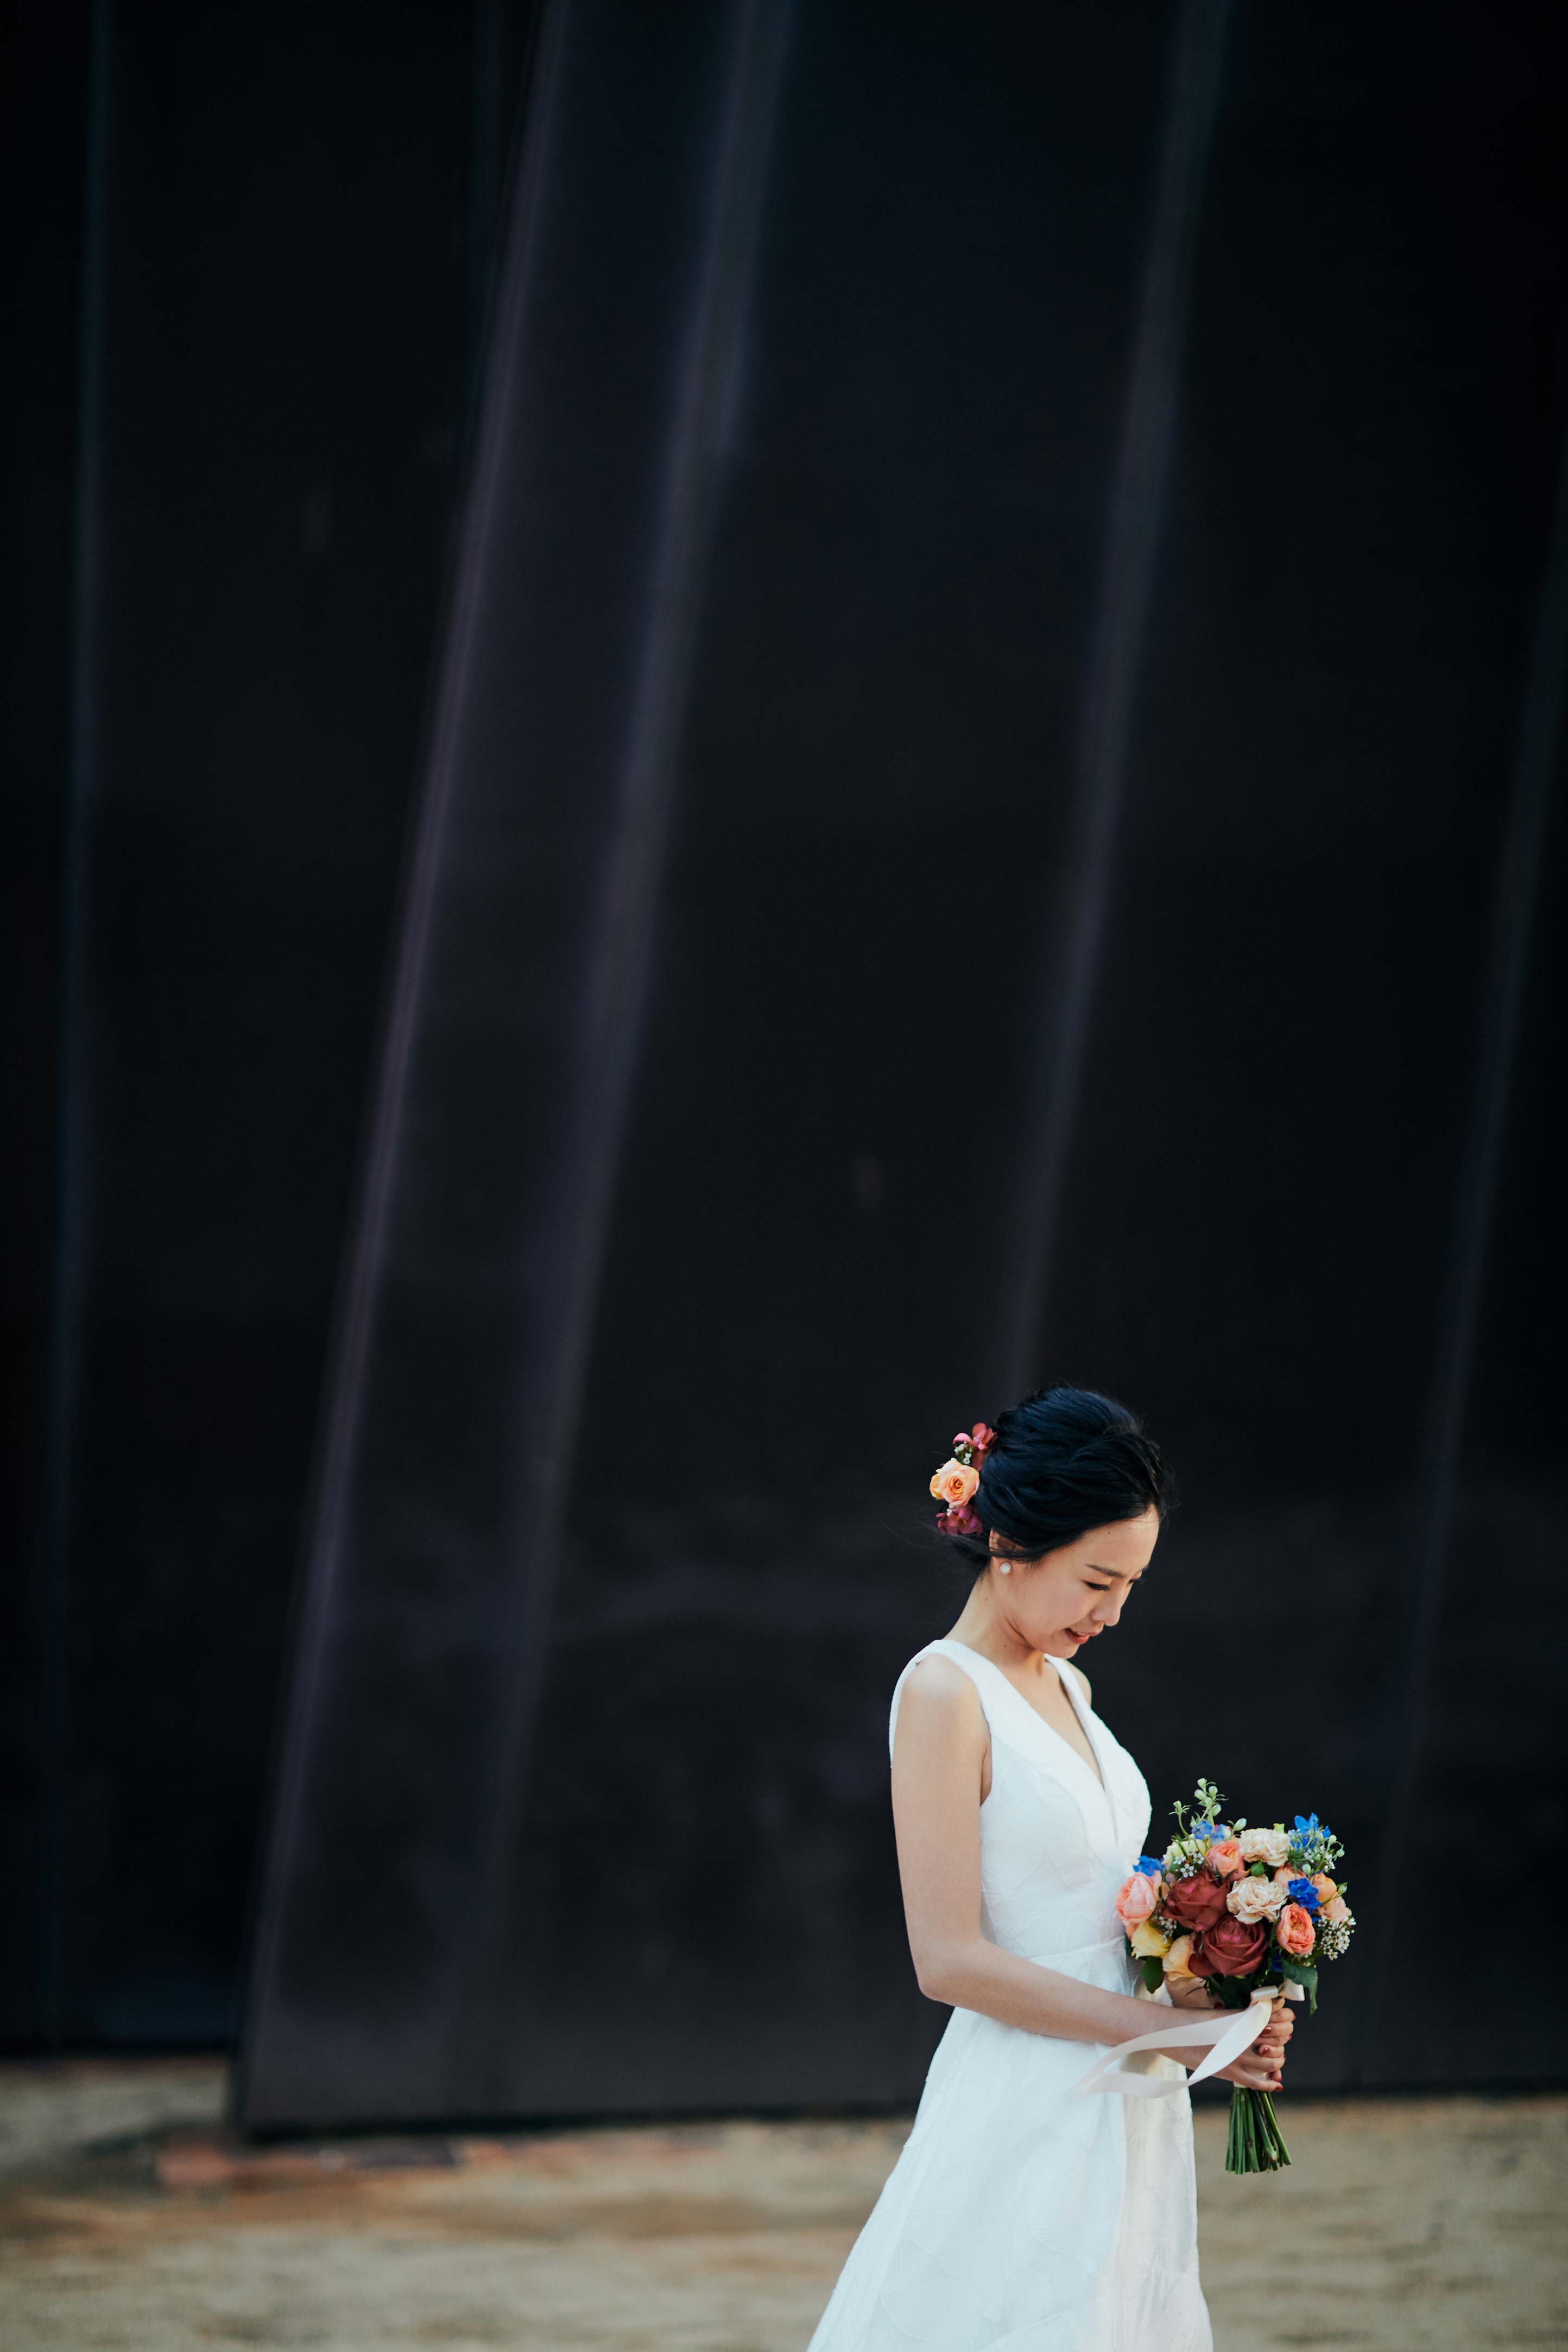 Melbourne-Wedding-Photographer-Kettle-Black-ACCA-bride-bouquet